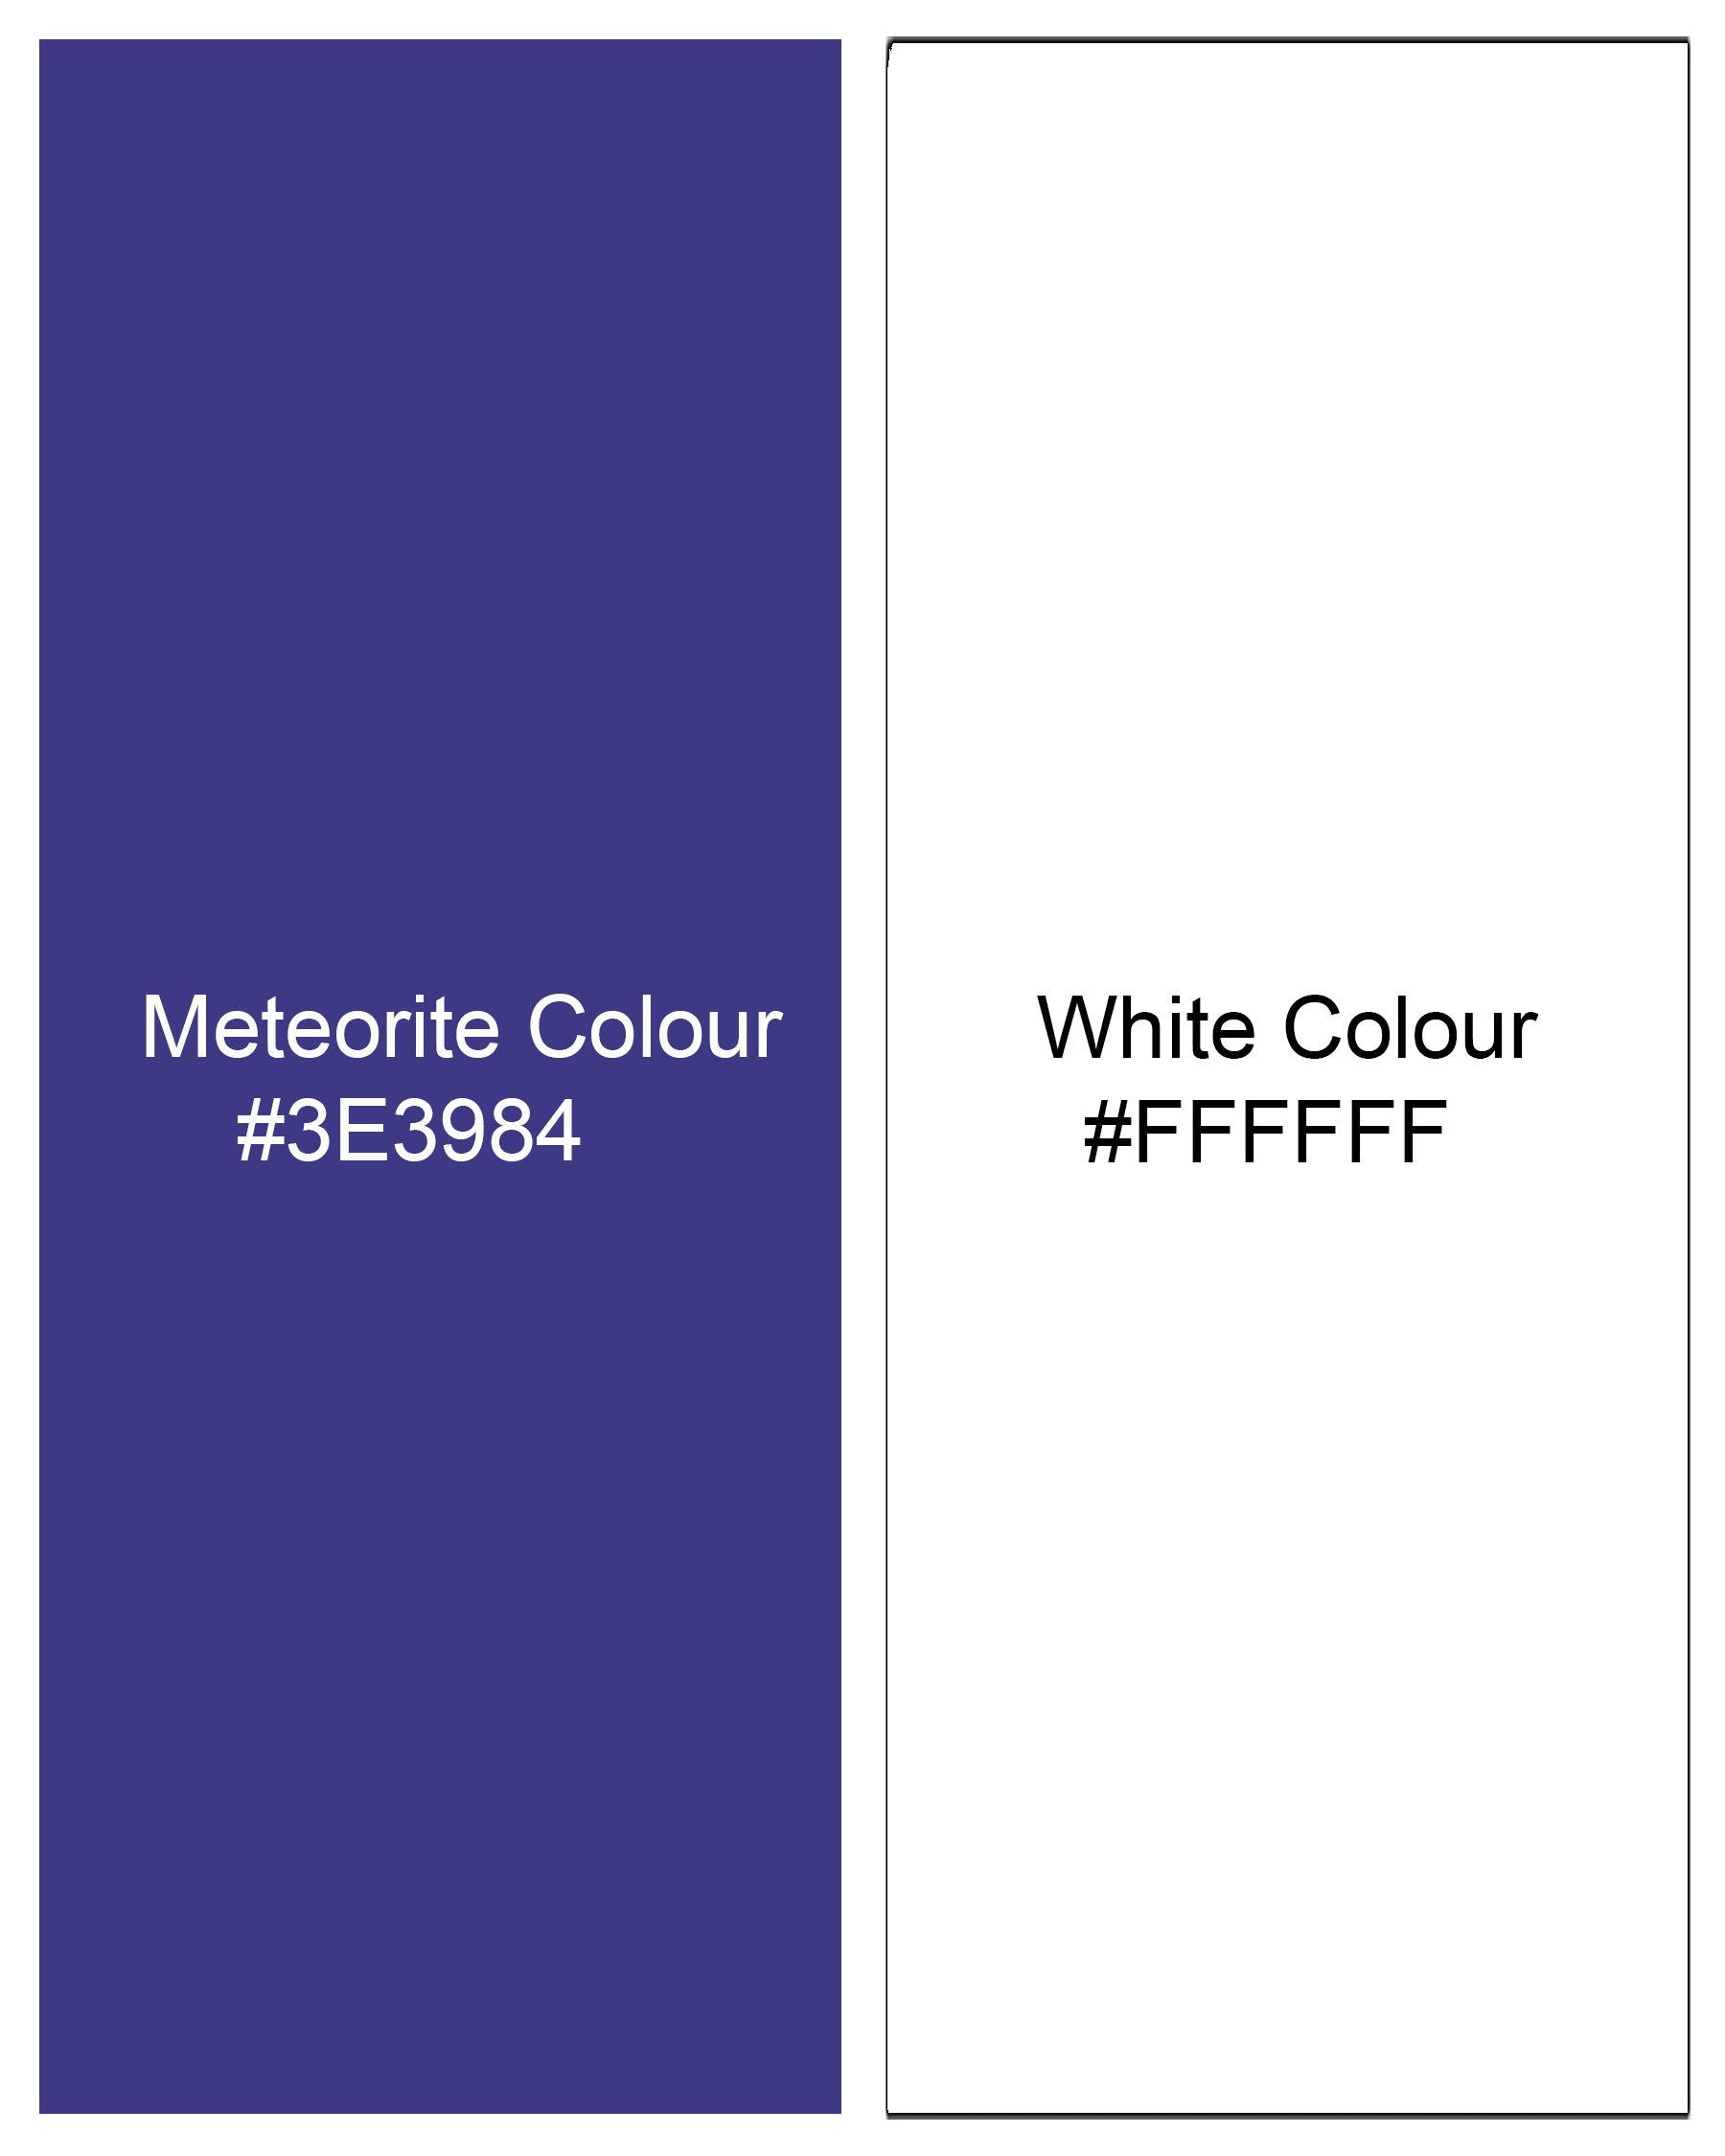 Meteorite Blue and White Premium Cotton Designer Block Shirt 8050-P112-38, 8050-P112-H-38, 8050-P112-39,8050-P112-H-39, 8050-P112-40, 8050-P112-H-40, 8050-P112-42, 8050-P112-H-42, 8050-P112-44, 8050-P112-H-44, 8050-P112-46, 8050-P112-H-46, 8050-P112-48, 8050-P112-H-48, 8050-P112-50, 8050-P112-H-50, 8050-P112-52, 8050-P112-H-52